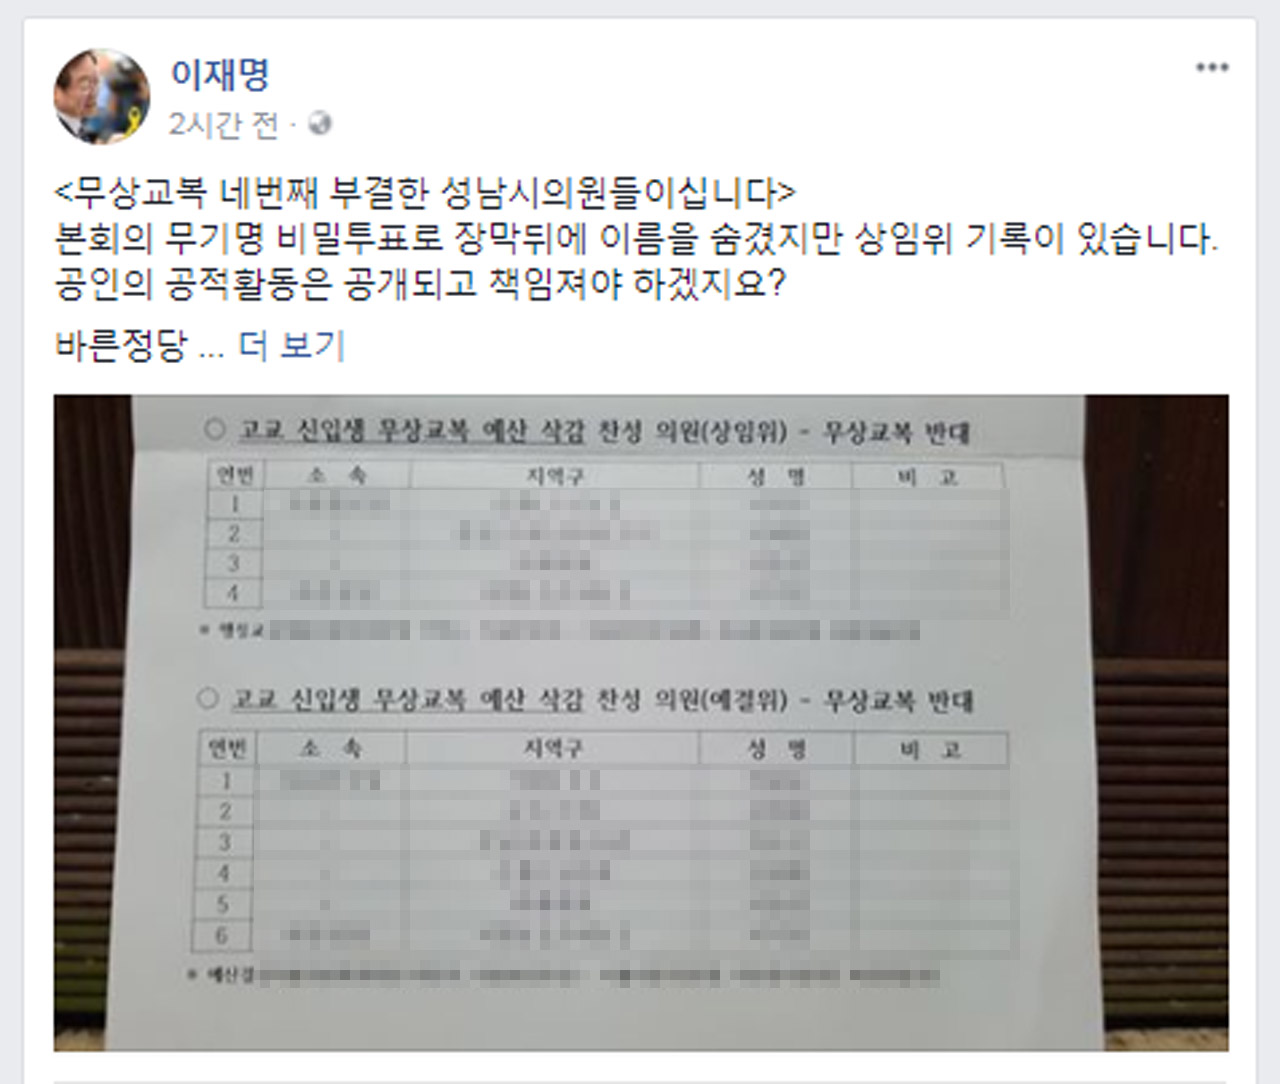 23일 무상교복 부결을 지적하며 명단을 공개한 이재명 성남시장 페이스북 갈무리 화면